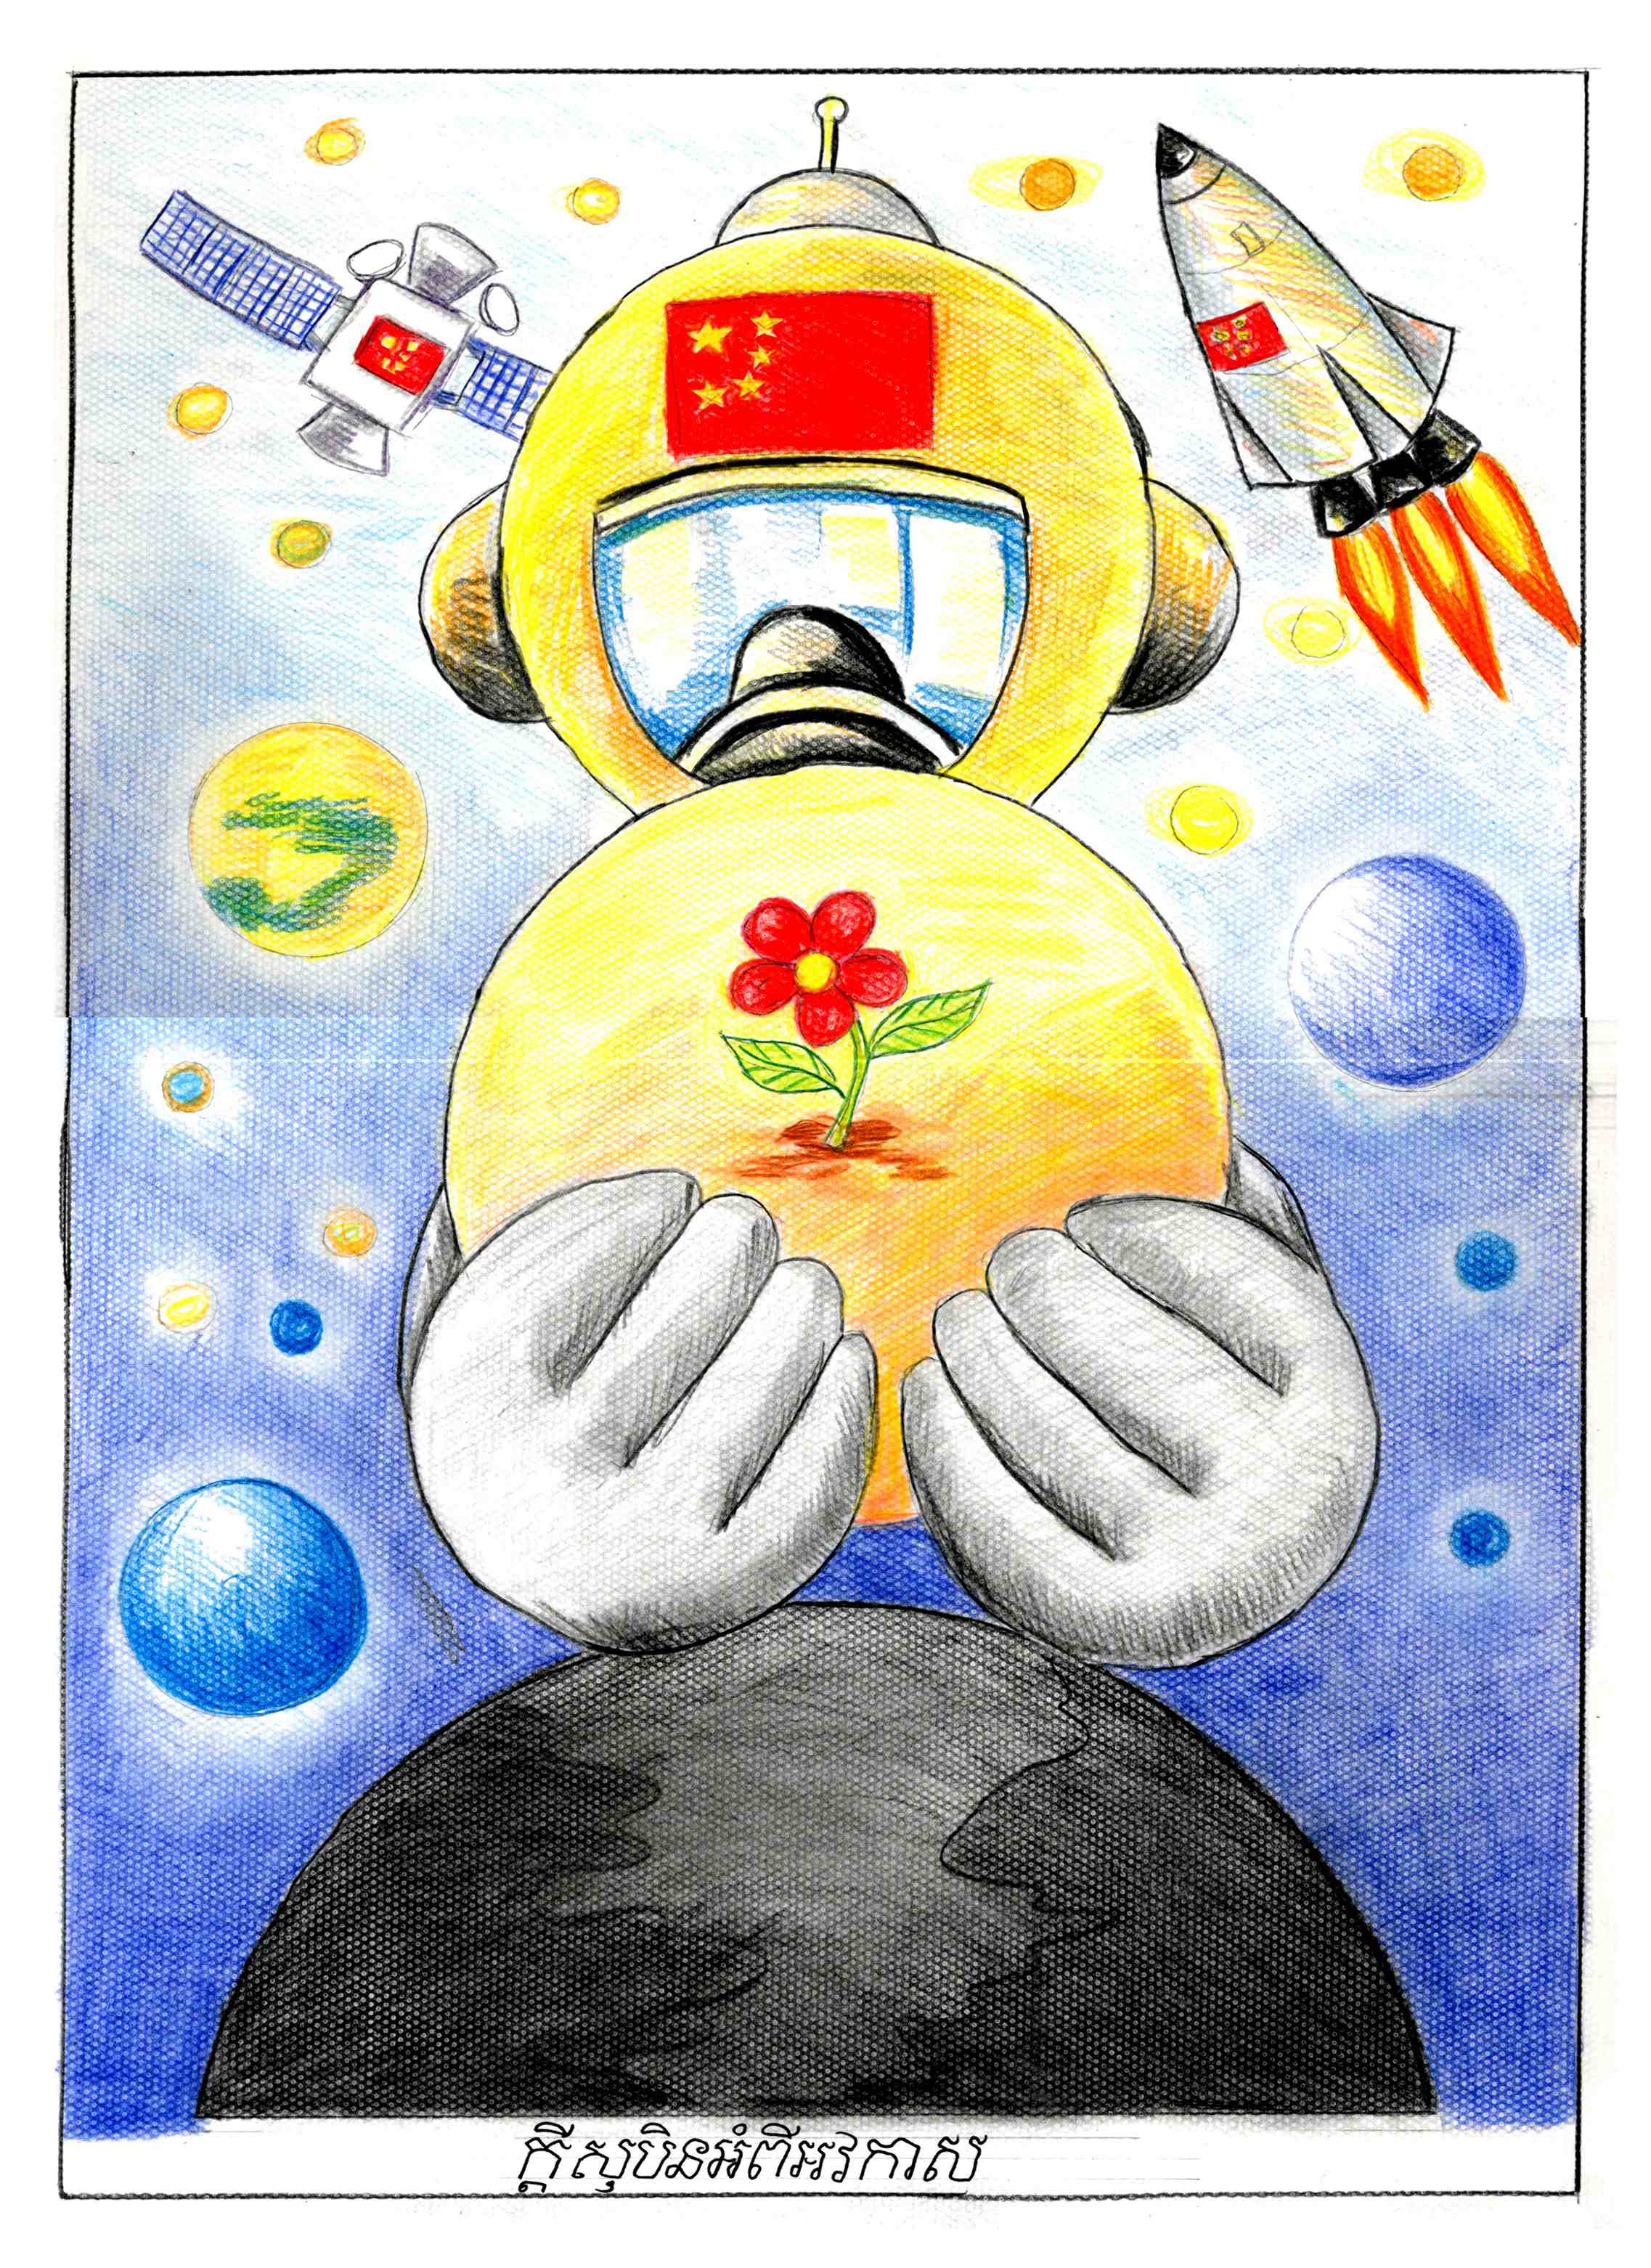 航天日绘画作品《我在太空种朵花》,柬埔寨乌塔·班纳德微